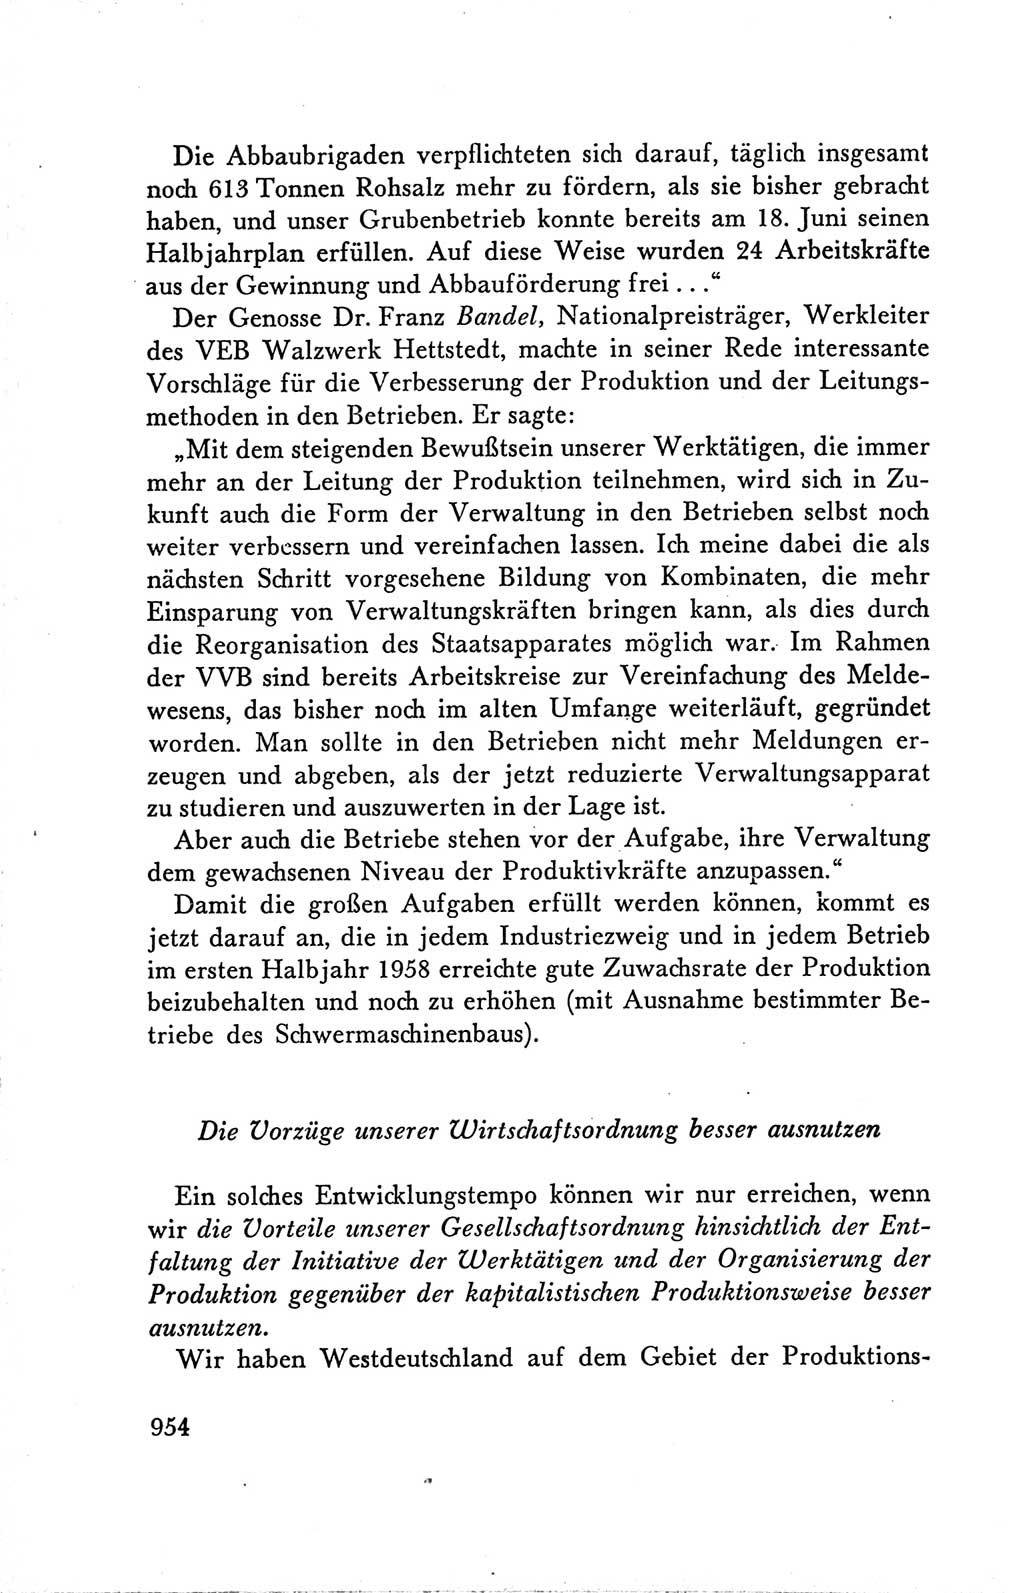 Protokoll der Verhandlungen des Ⅴ. Parteitages der Sozialistischen Einheitspartei Deutschlands (SED) [Deutsche Demokratische Republik (DDR)] 1958, Seite 954